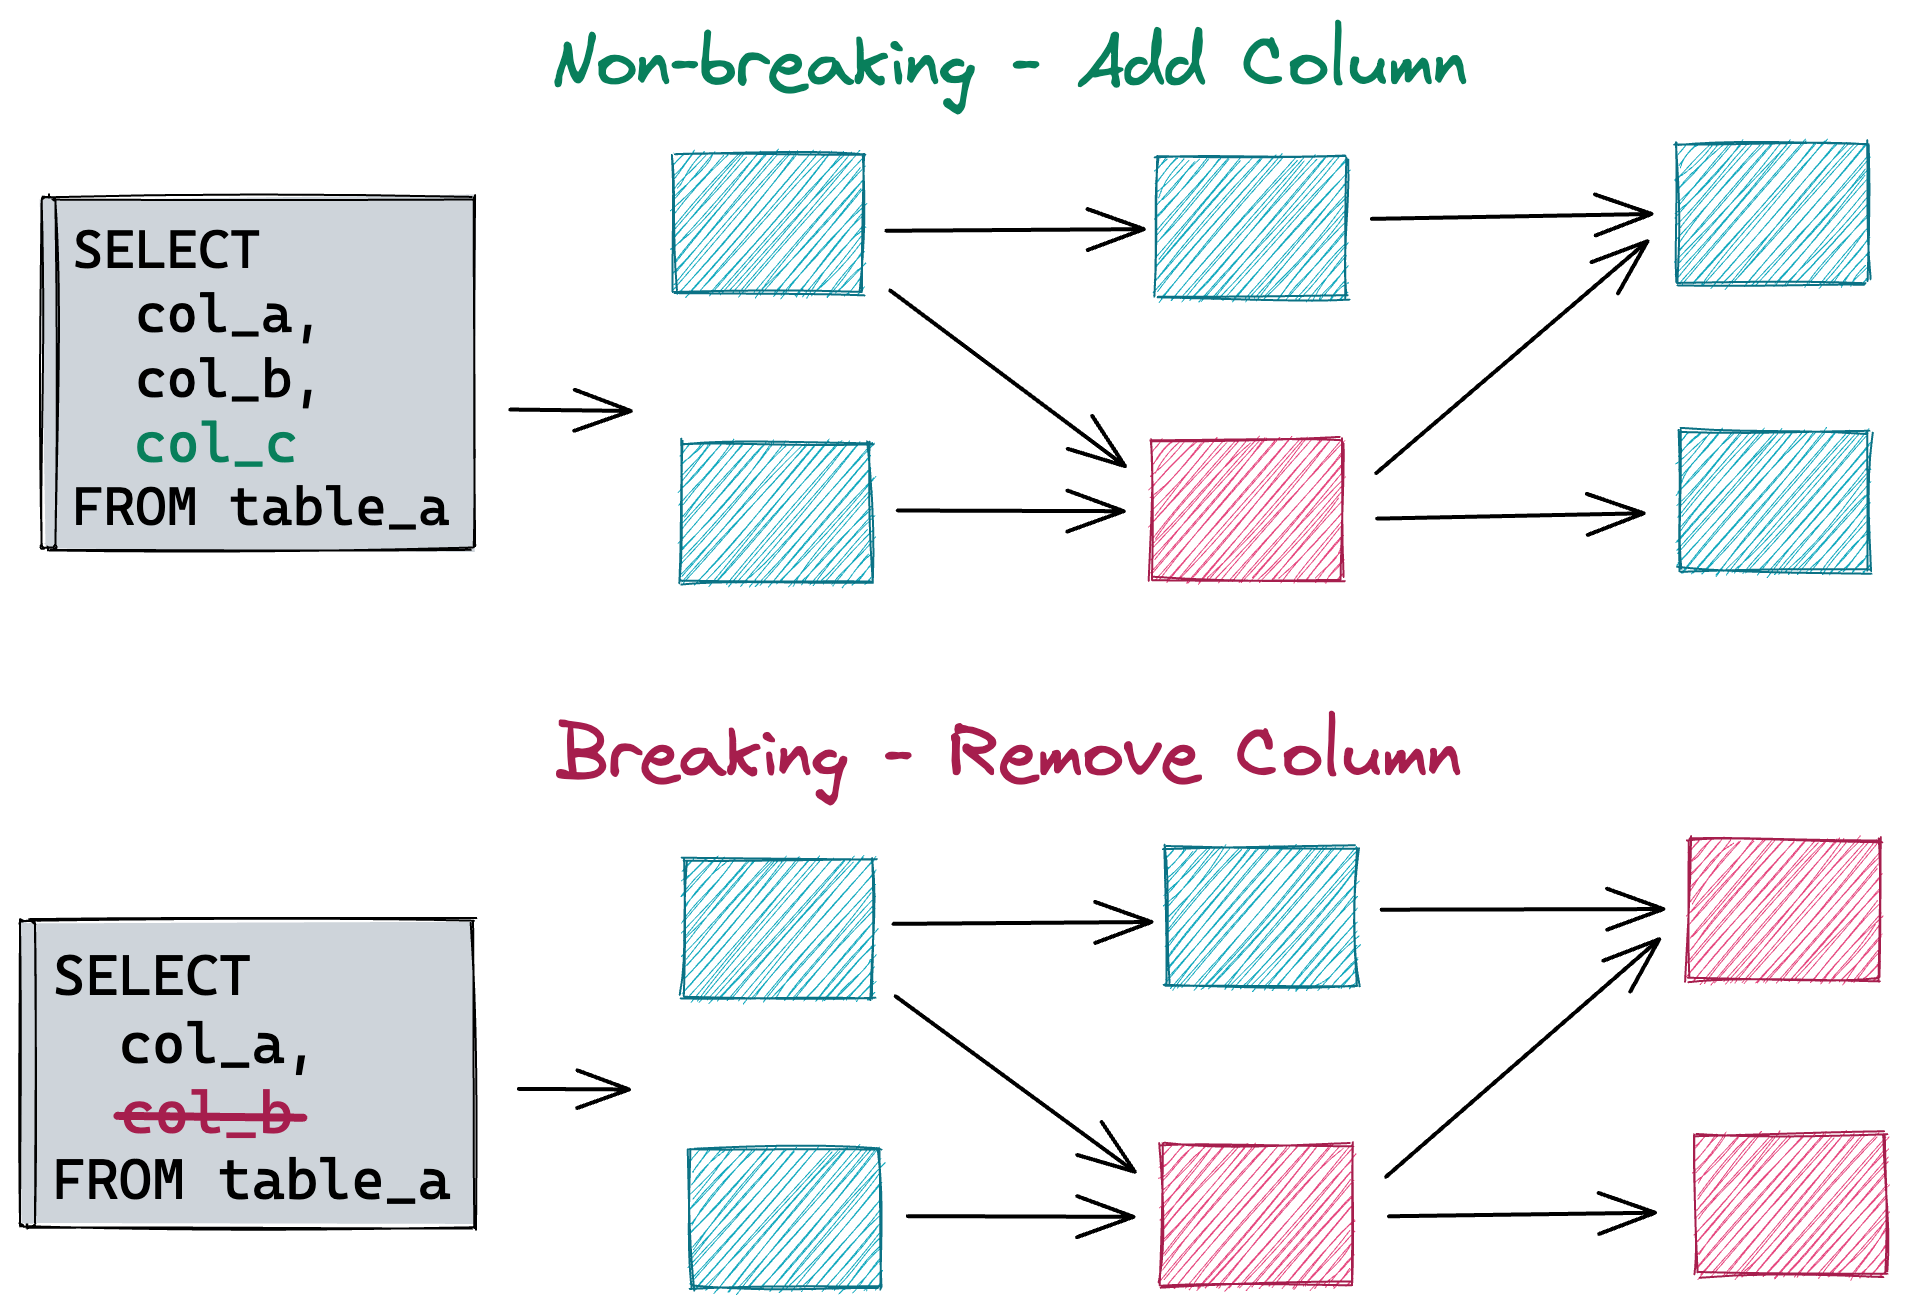 Figure 4: Breaking vs. non-breaking changes